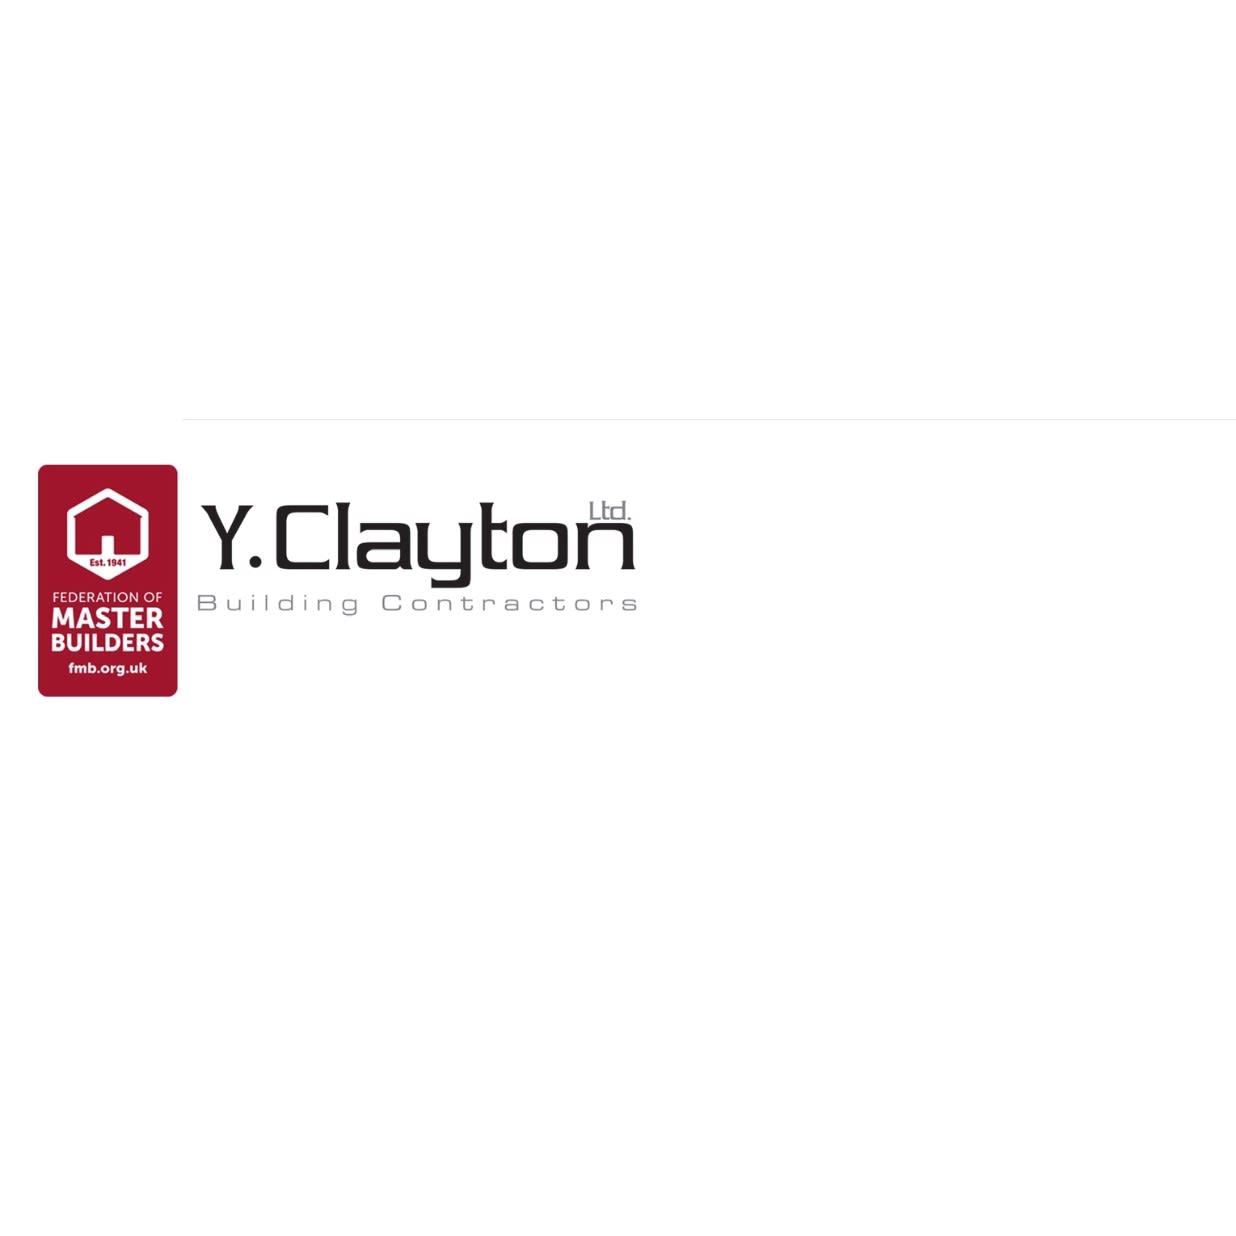 LOGO Y. Clayton Building Contractors Ltd Melton Mowbray 07518 383341